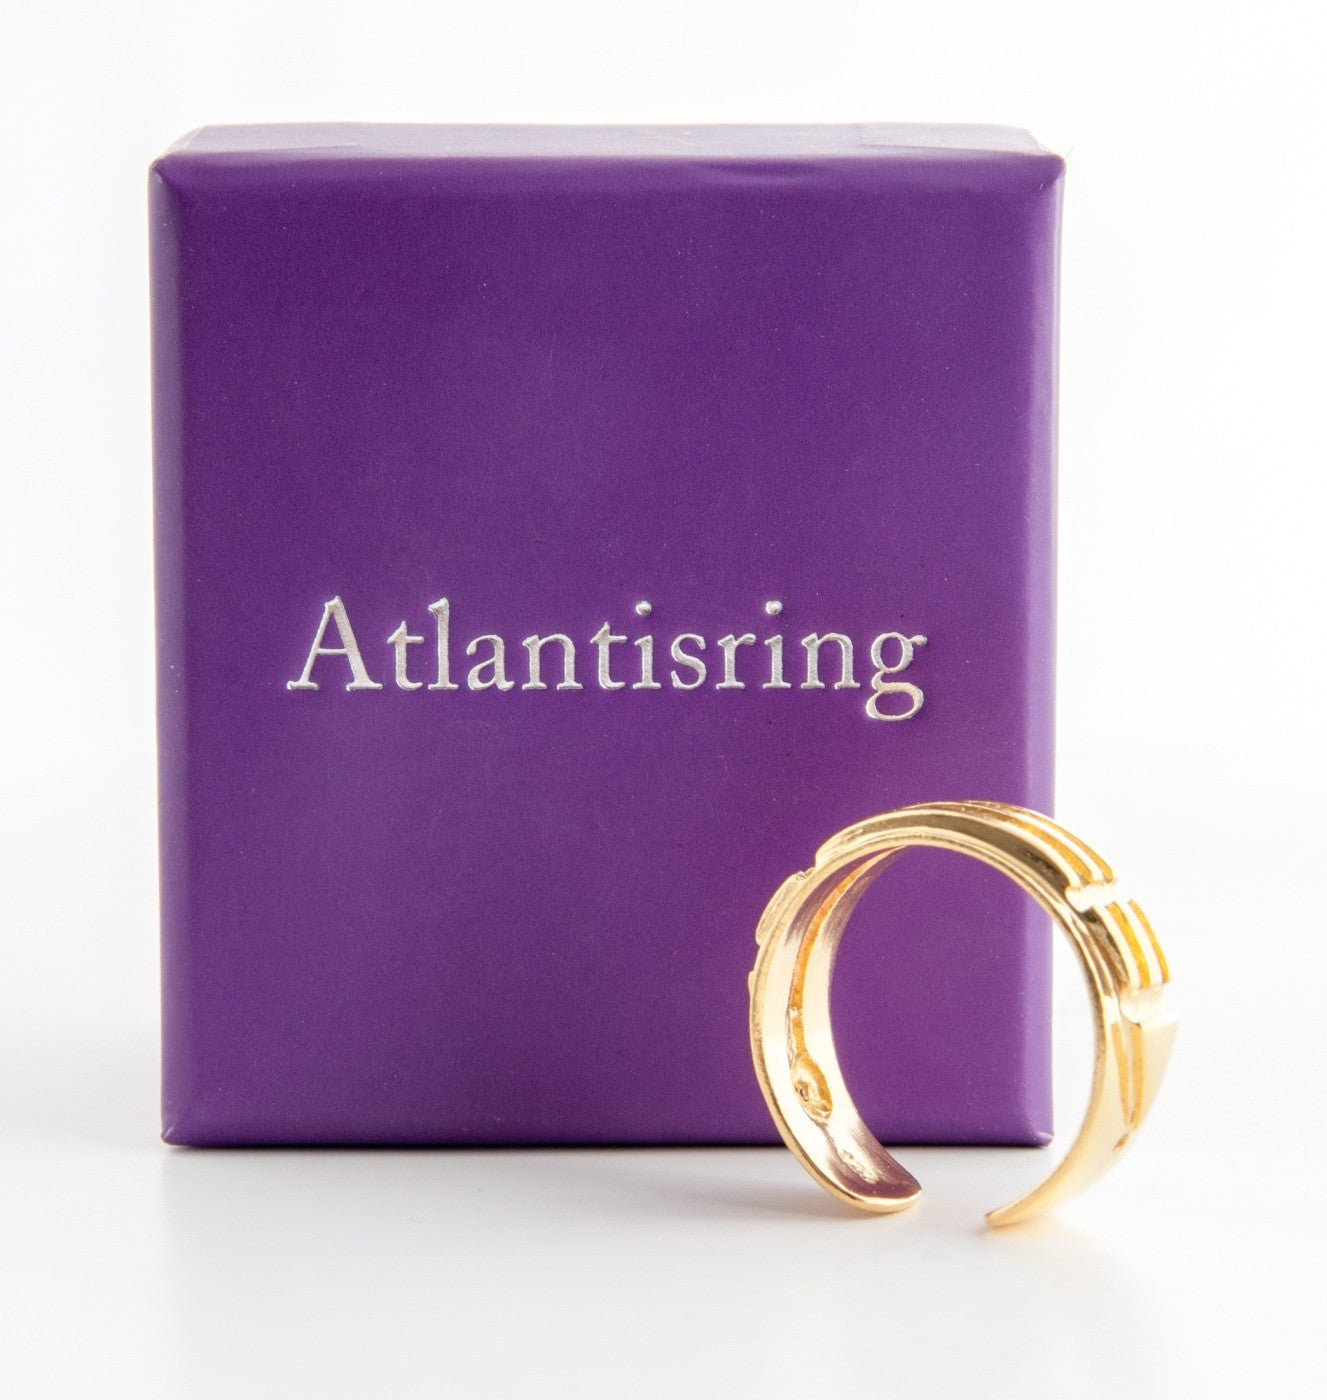 Atlantisring (Damengröße) vergoldet - Das Raeucherwerk